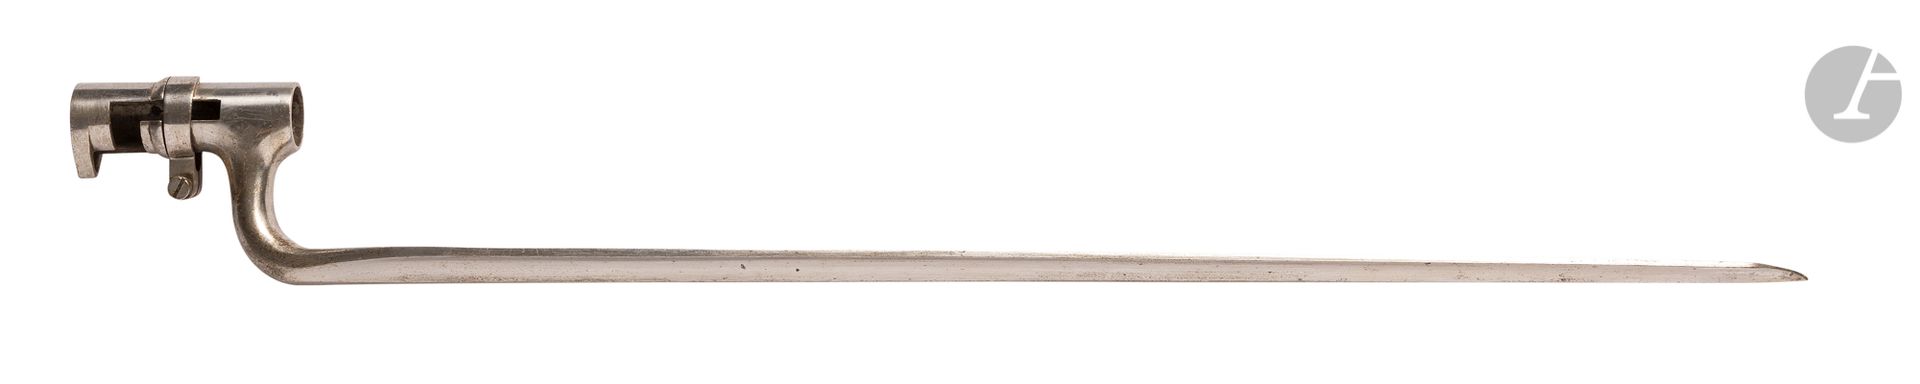 Null 美国
1871型插座刺刀。
带中位套圈的插座。三角形刀片。
没有被打。
总长度：52.4厘米
。